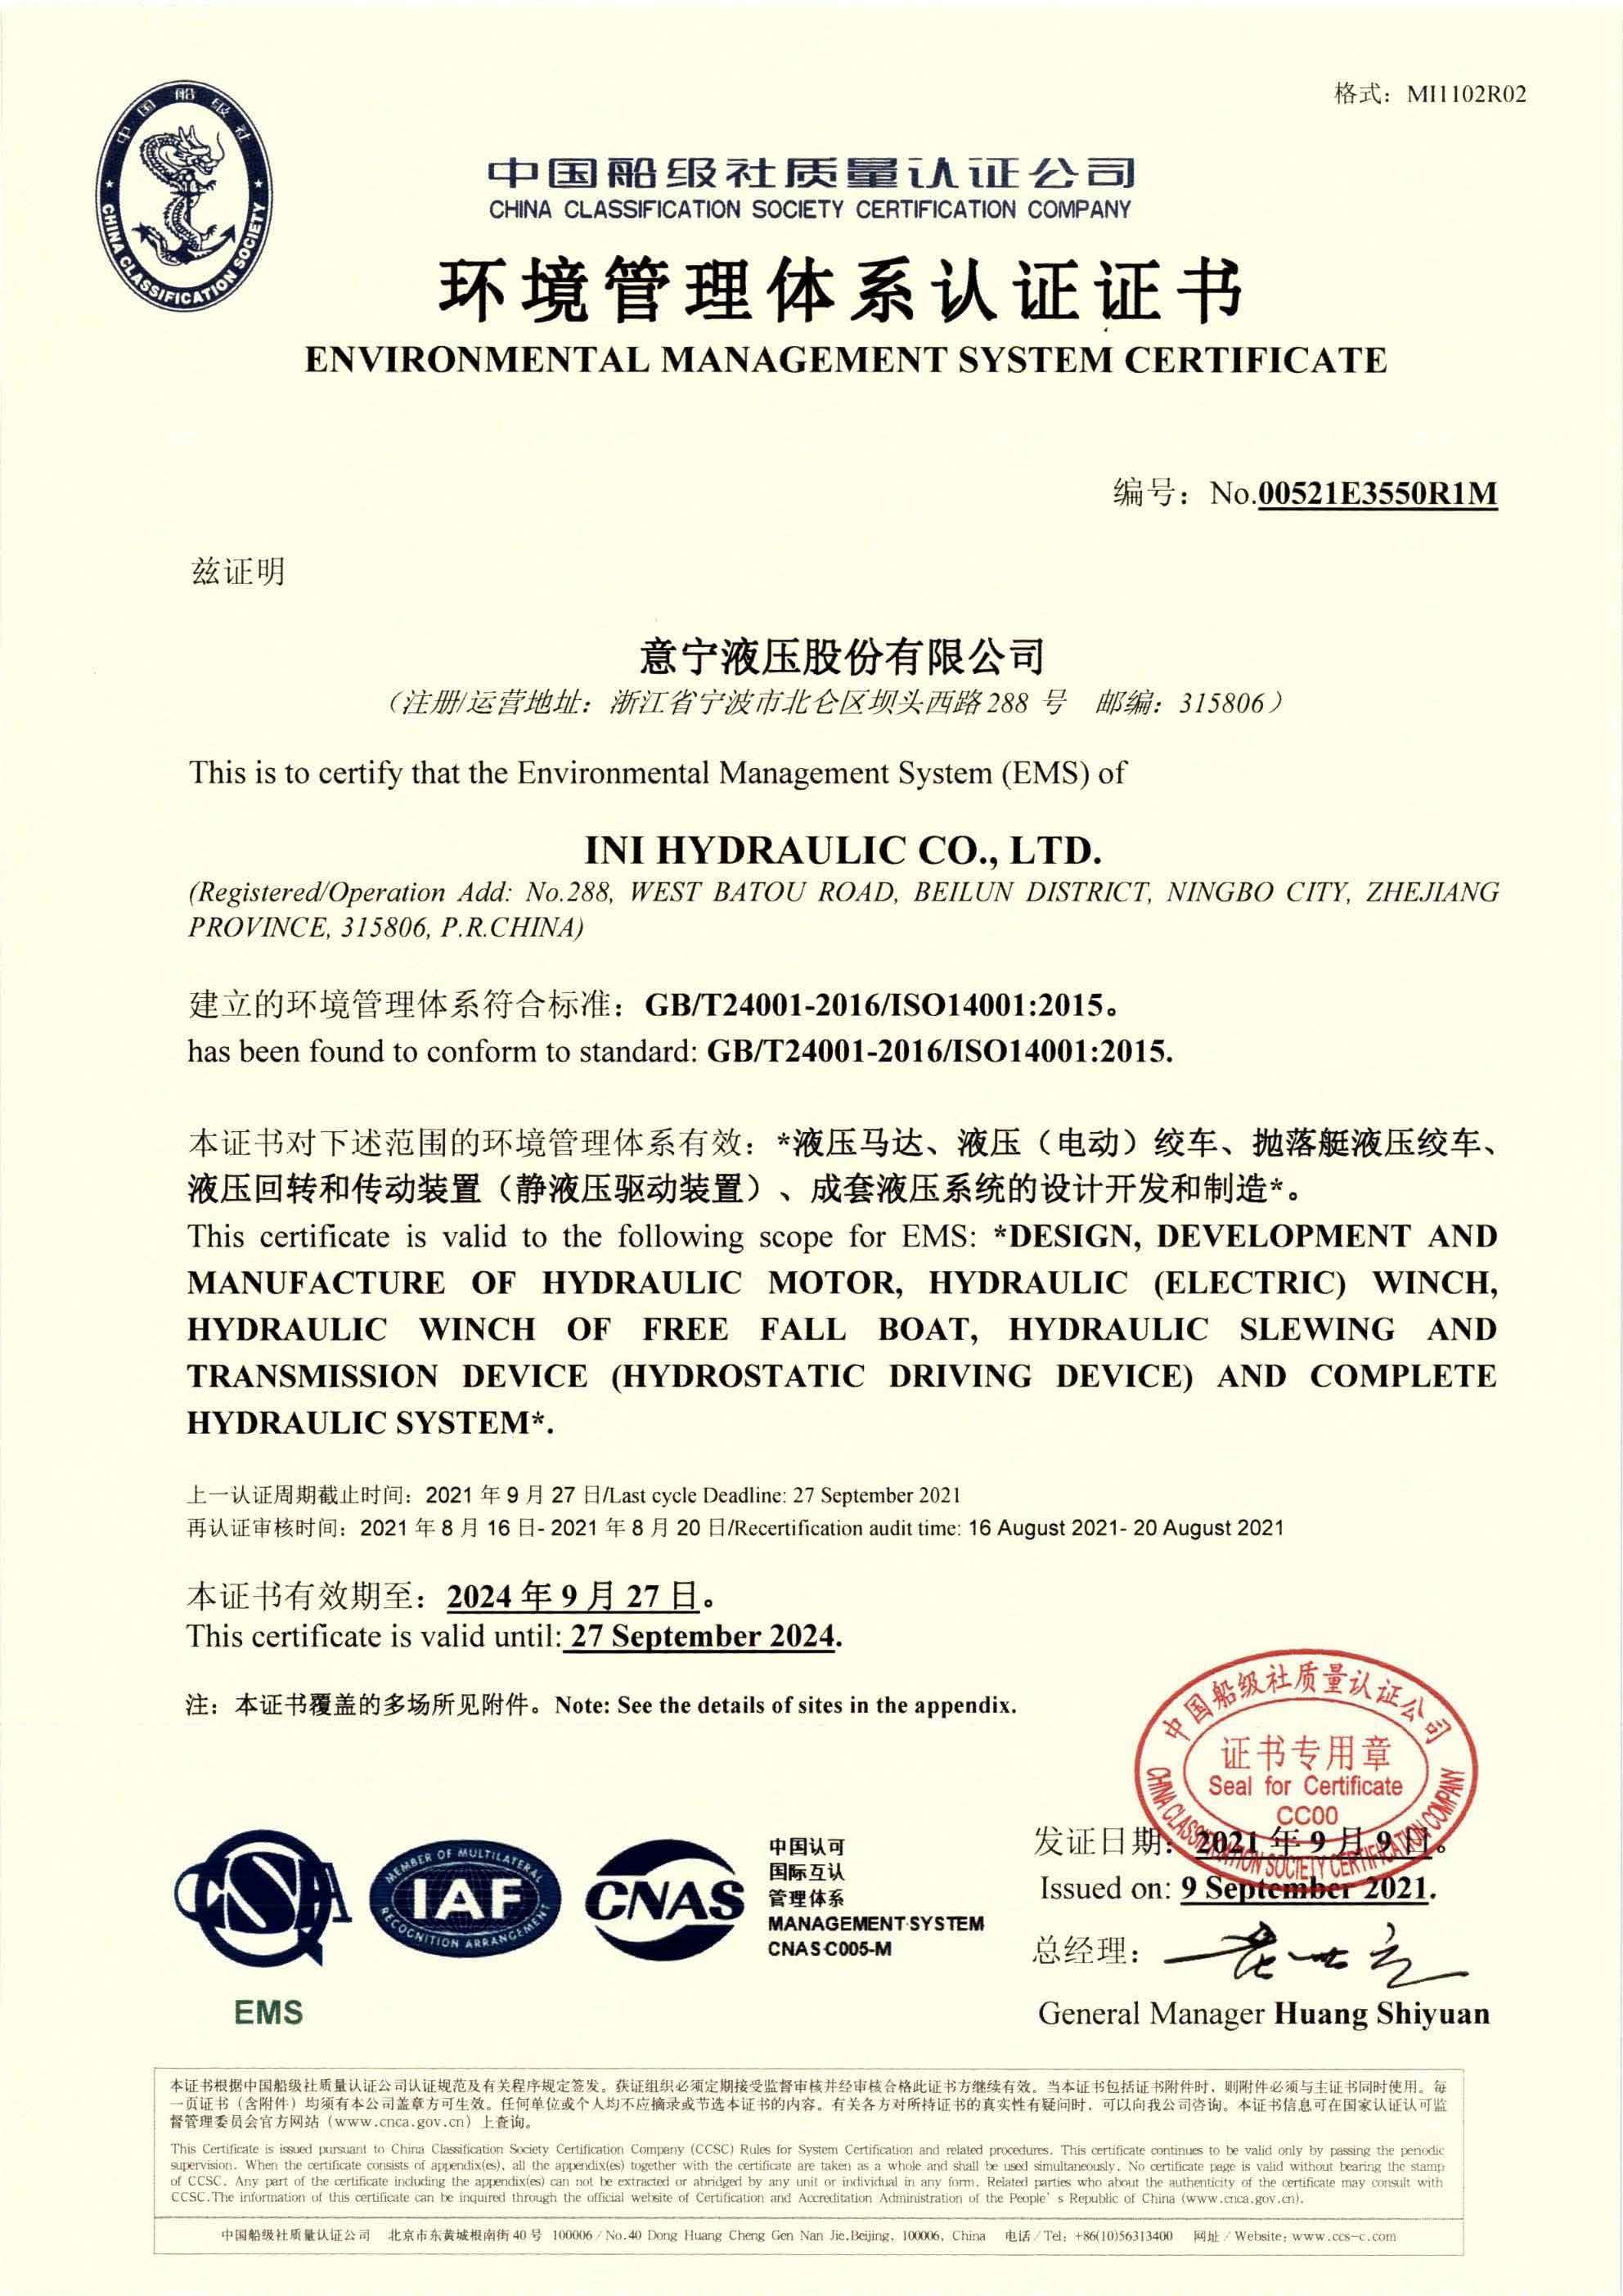 Certificado de Gestión Ambiental CCS, 2021 p1